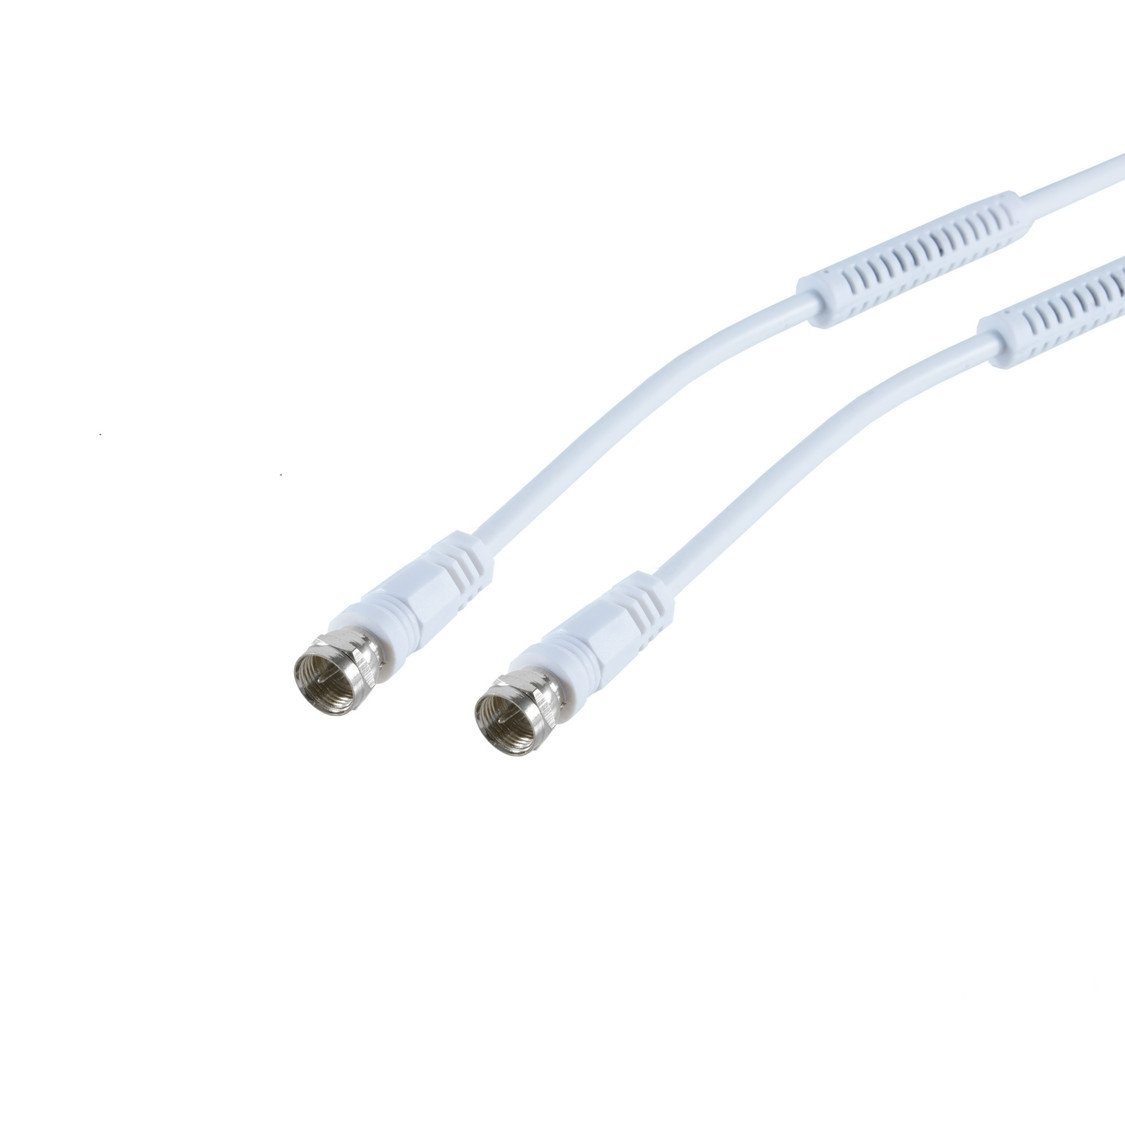 F-Stecker, SAT-Kabel, C-PIN, F-Stecker weiß, - kabelbude >100 cm) dB, 2,5m (250,00